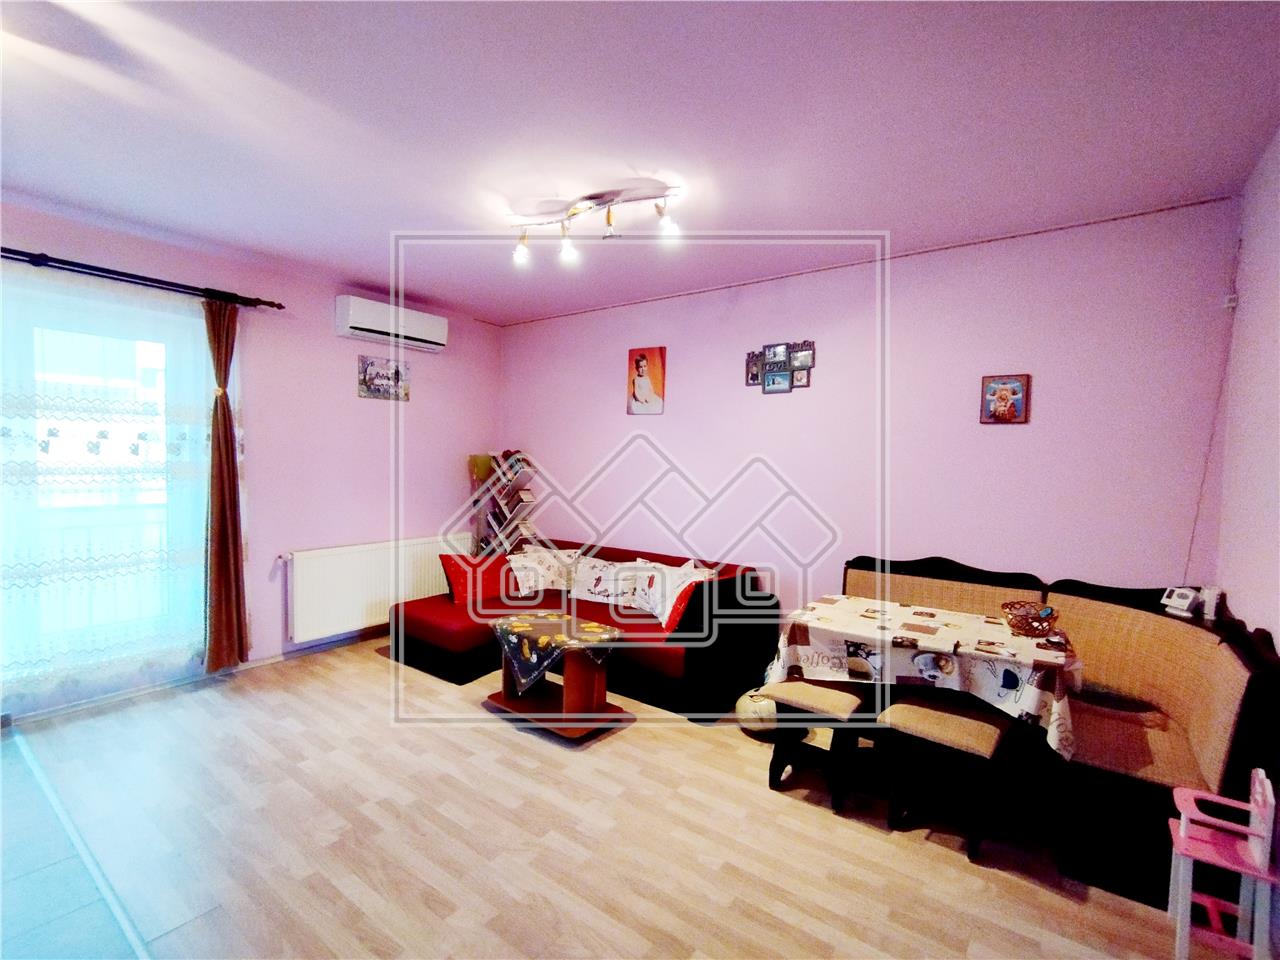 Apartament de vanzare in Sibiu - 3 camere - boxa la subsol- Gusterita